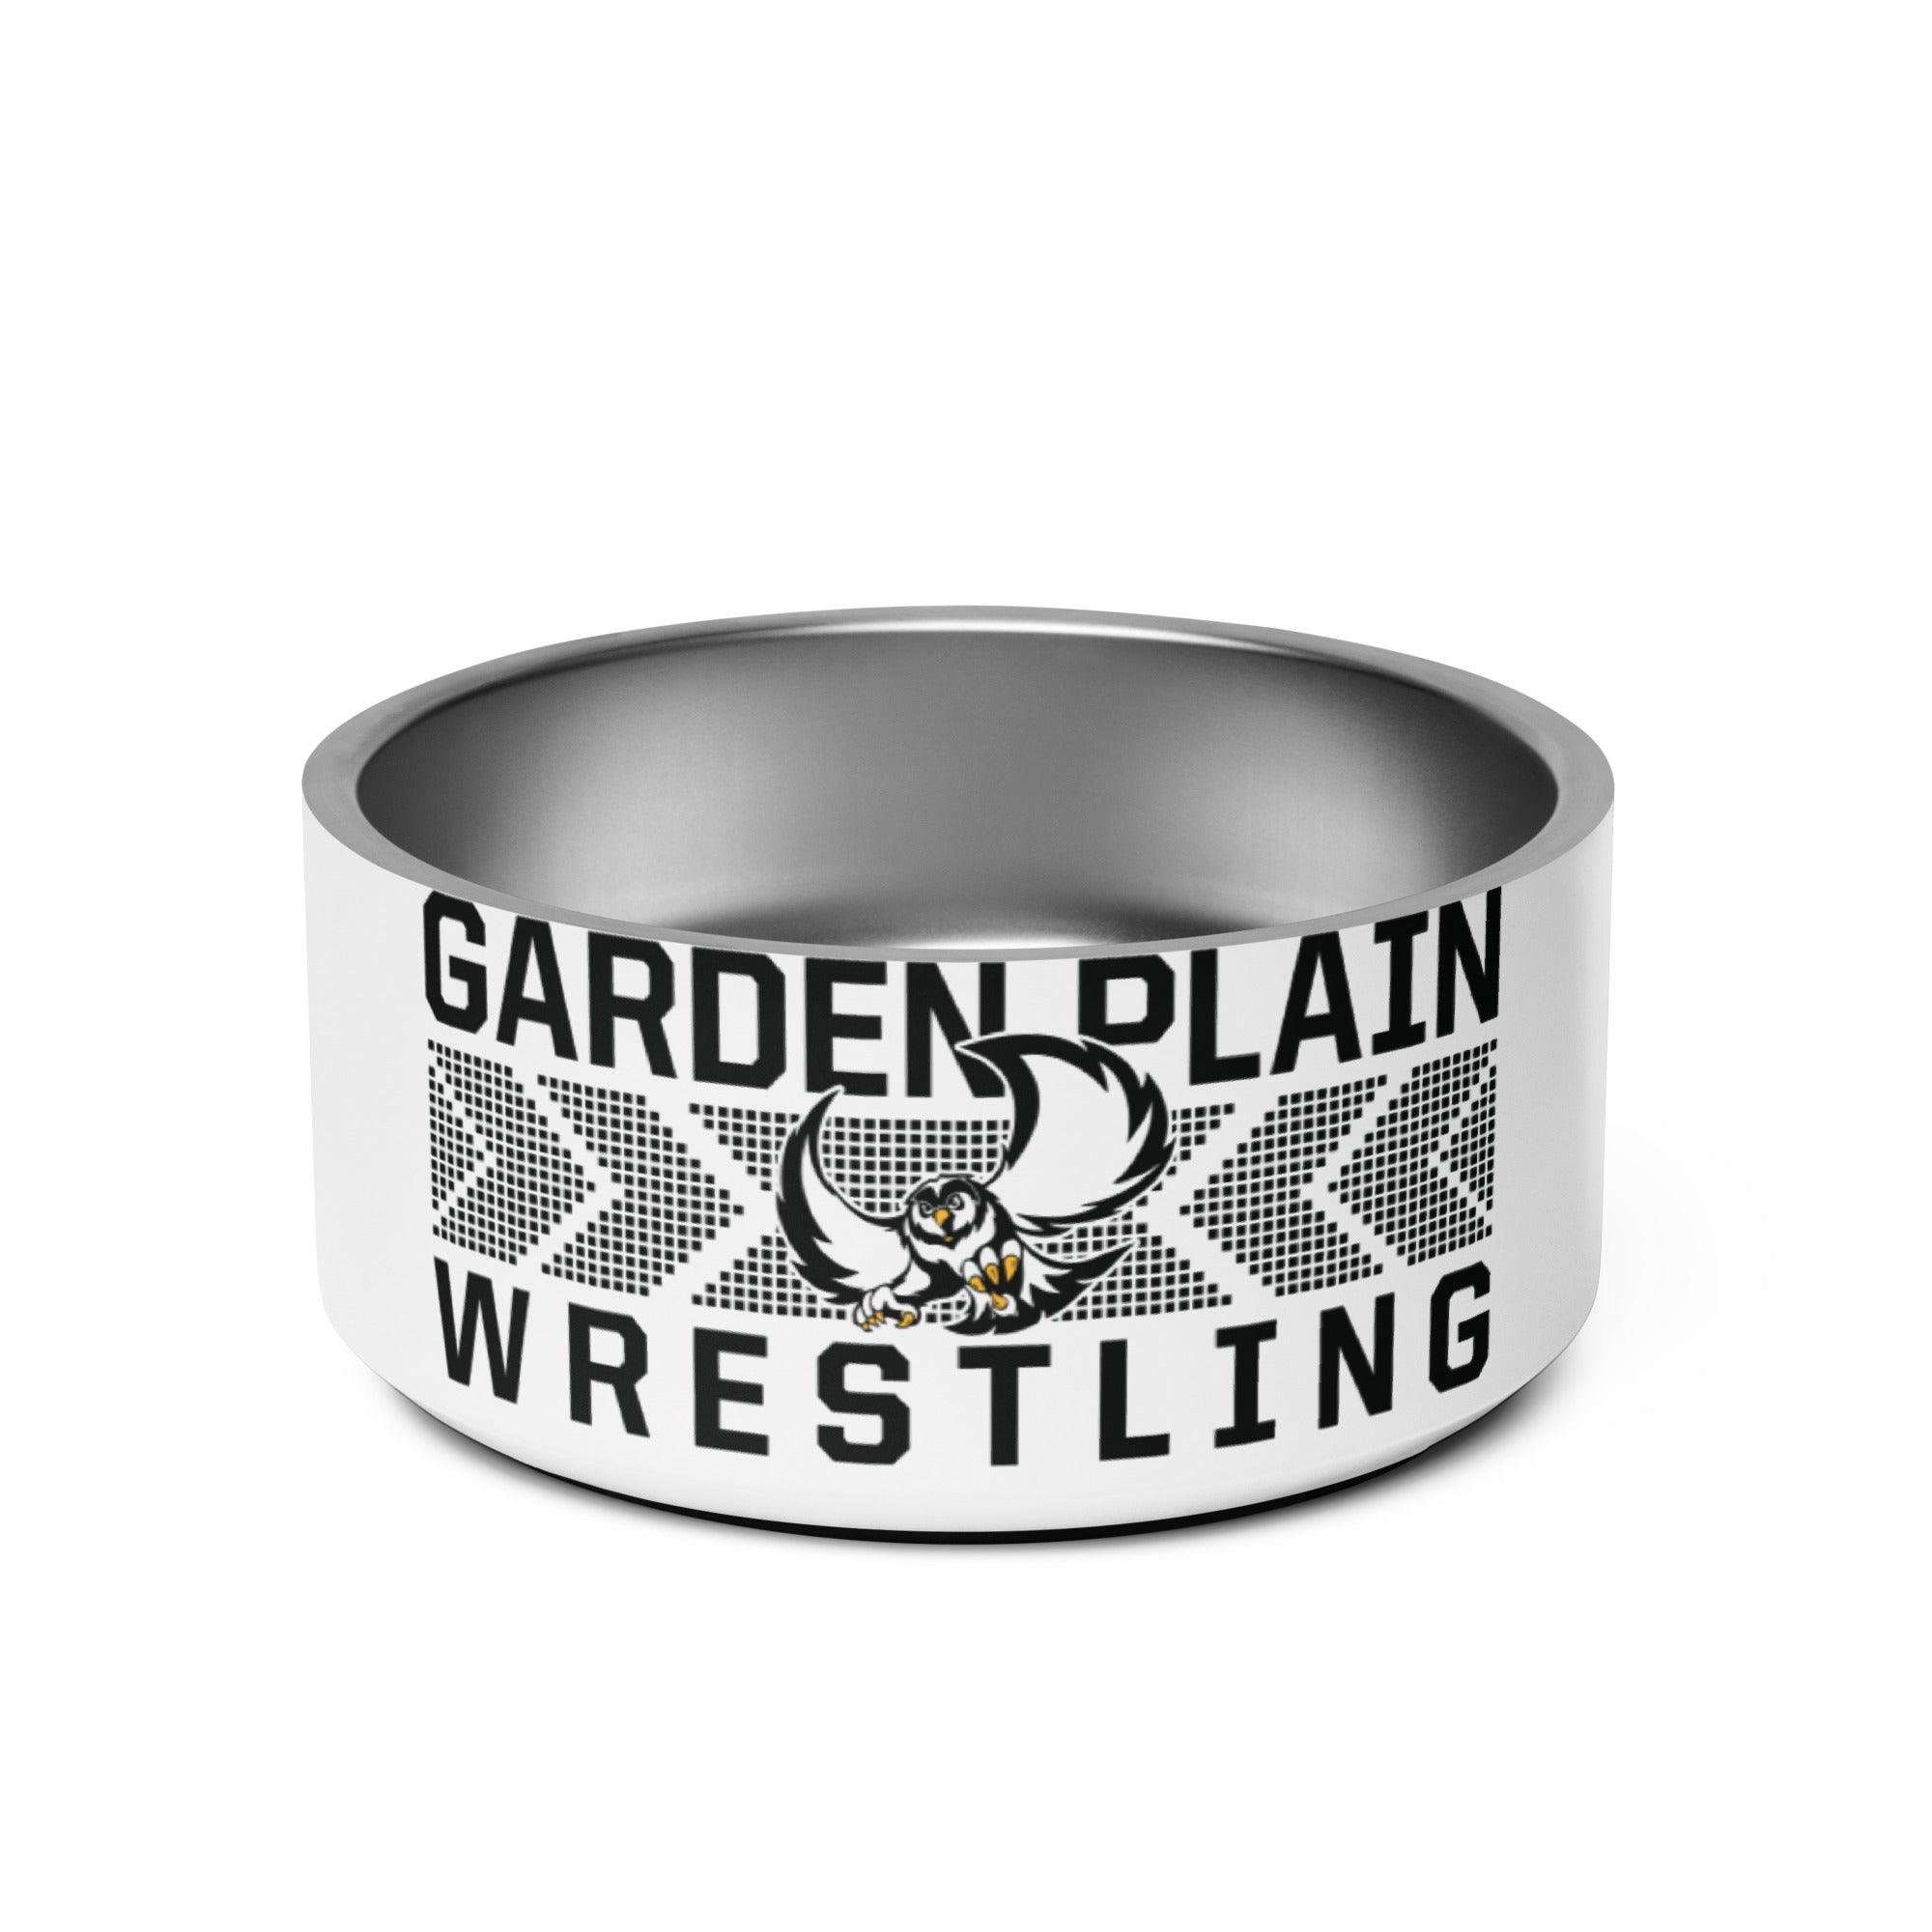 Garden Plain High School Wrestling All Over Print Pet bowl